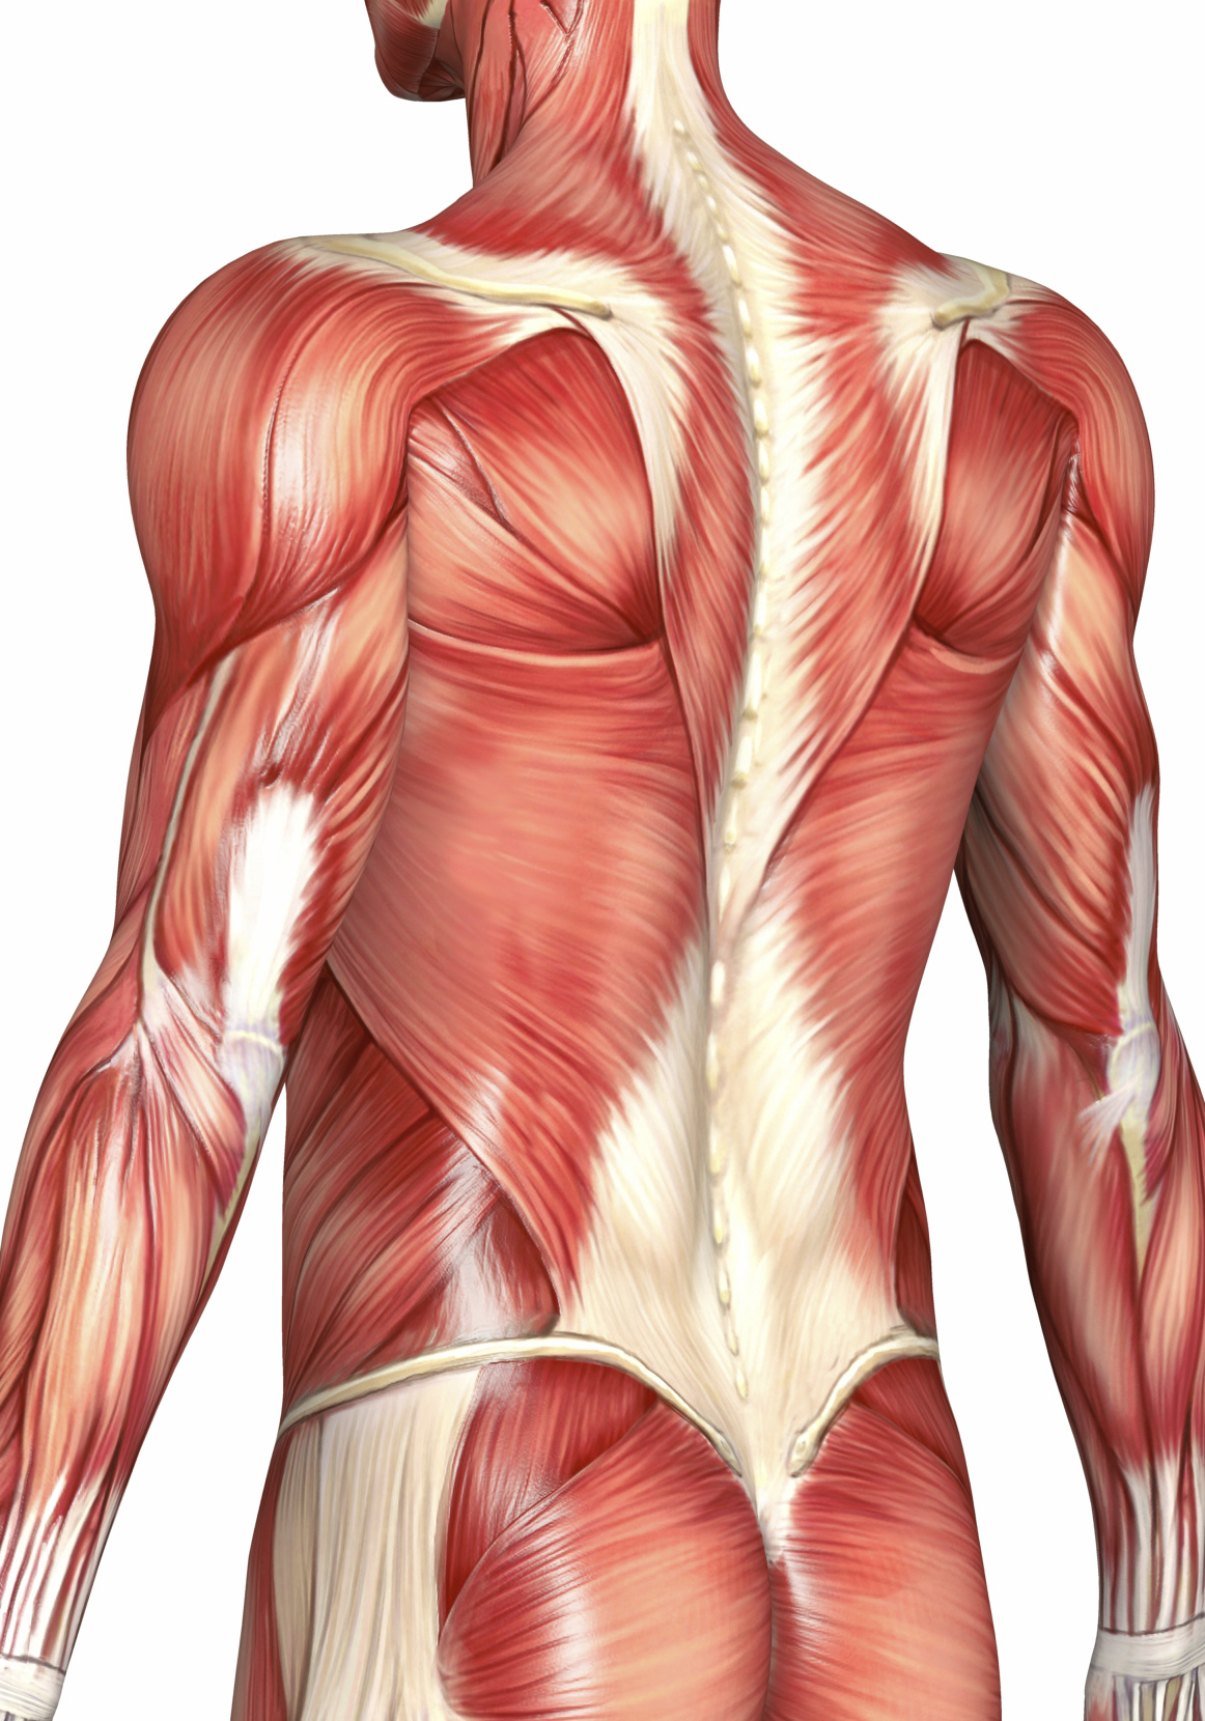 Мышцы картинка. Пояснично спинная фасция. Пояснично-грудная фасция анатомия. Мышцы спины анатомия человека. Спинные мышцы человека анатомия.